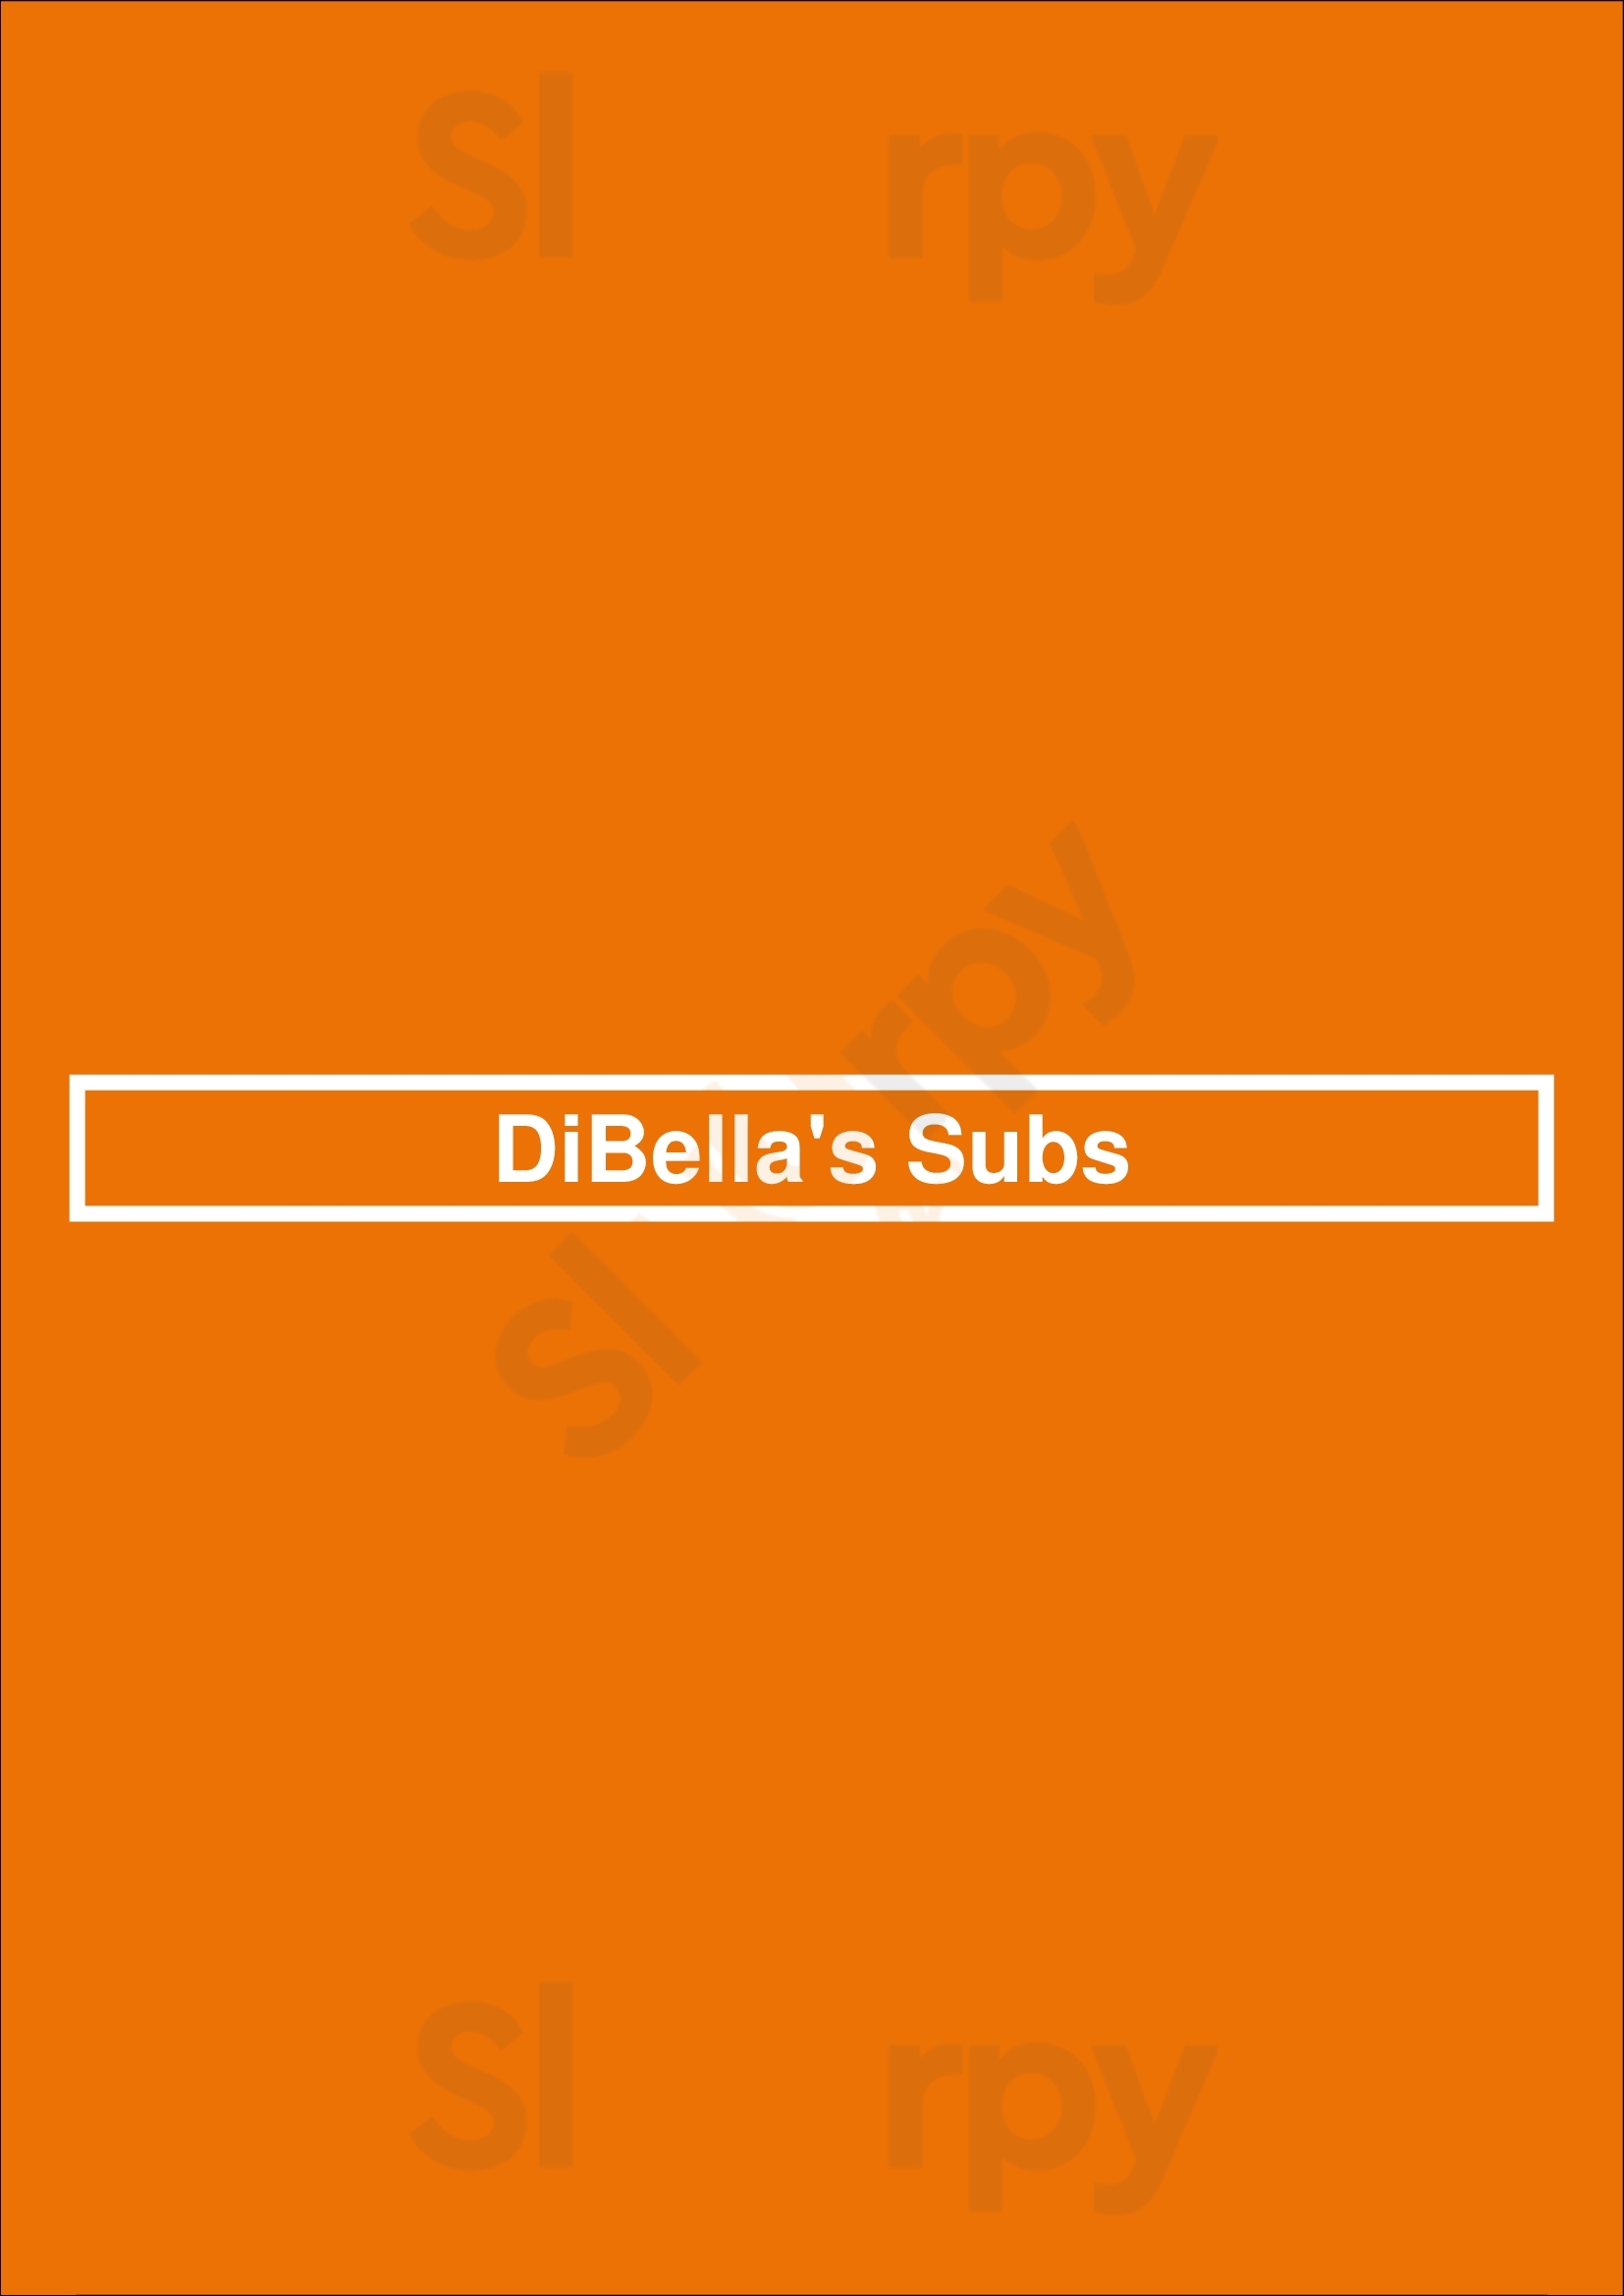 Dibella's Subs Milford Menu - 1